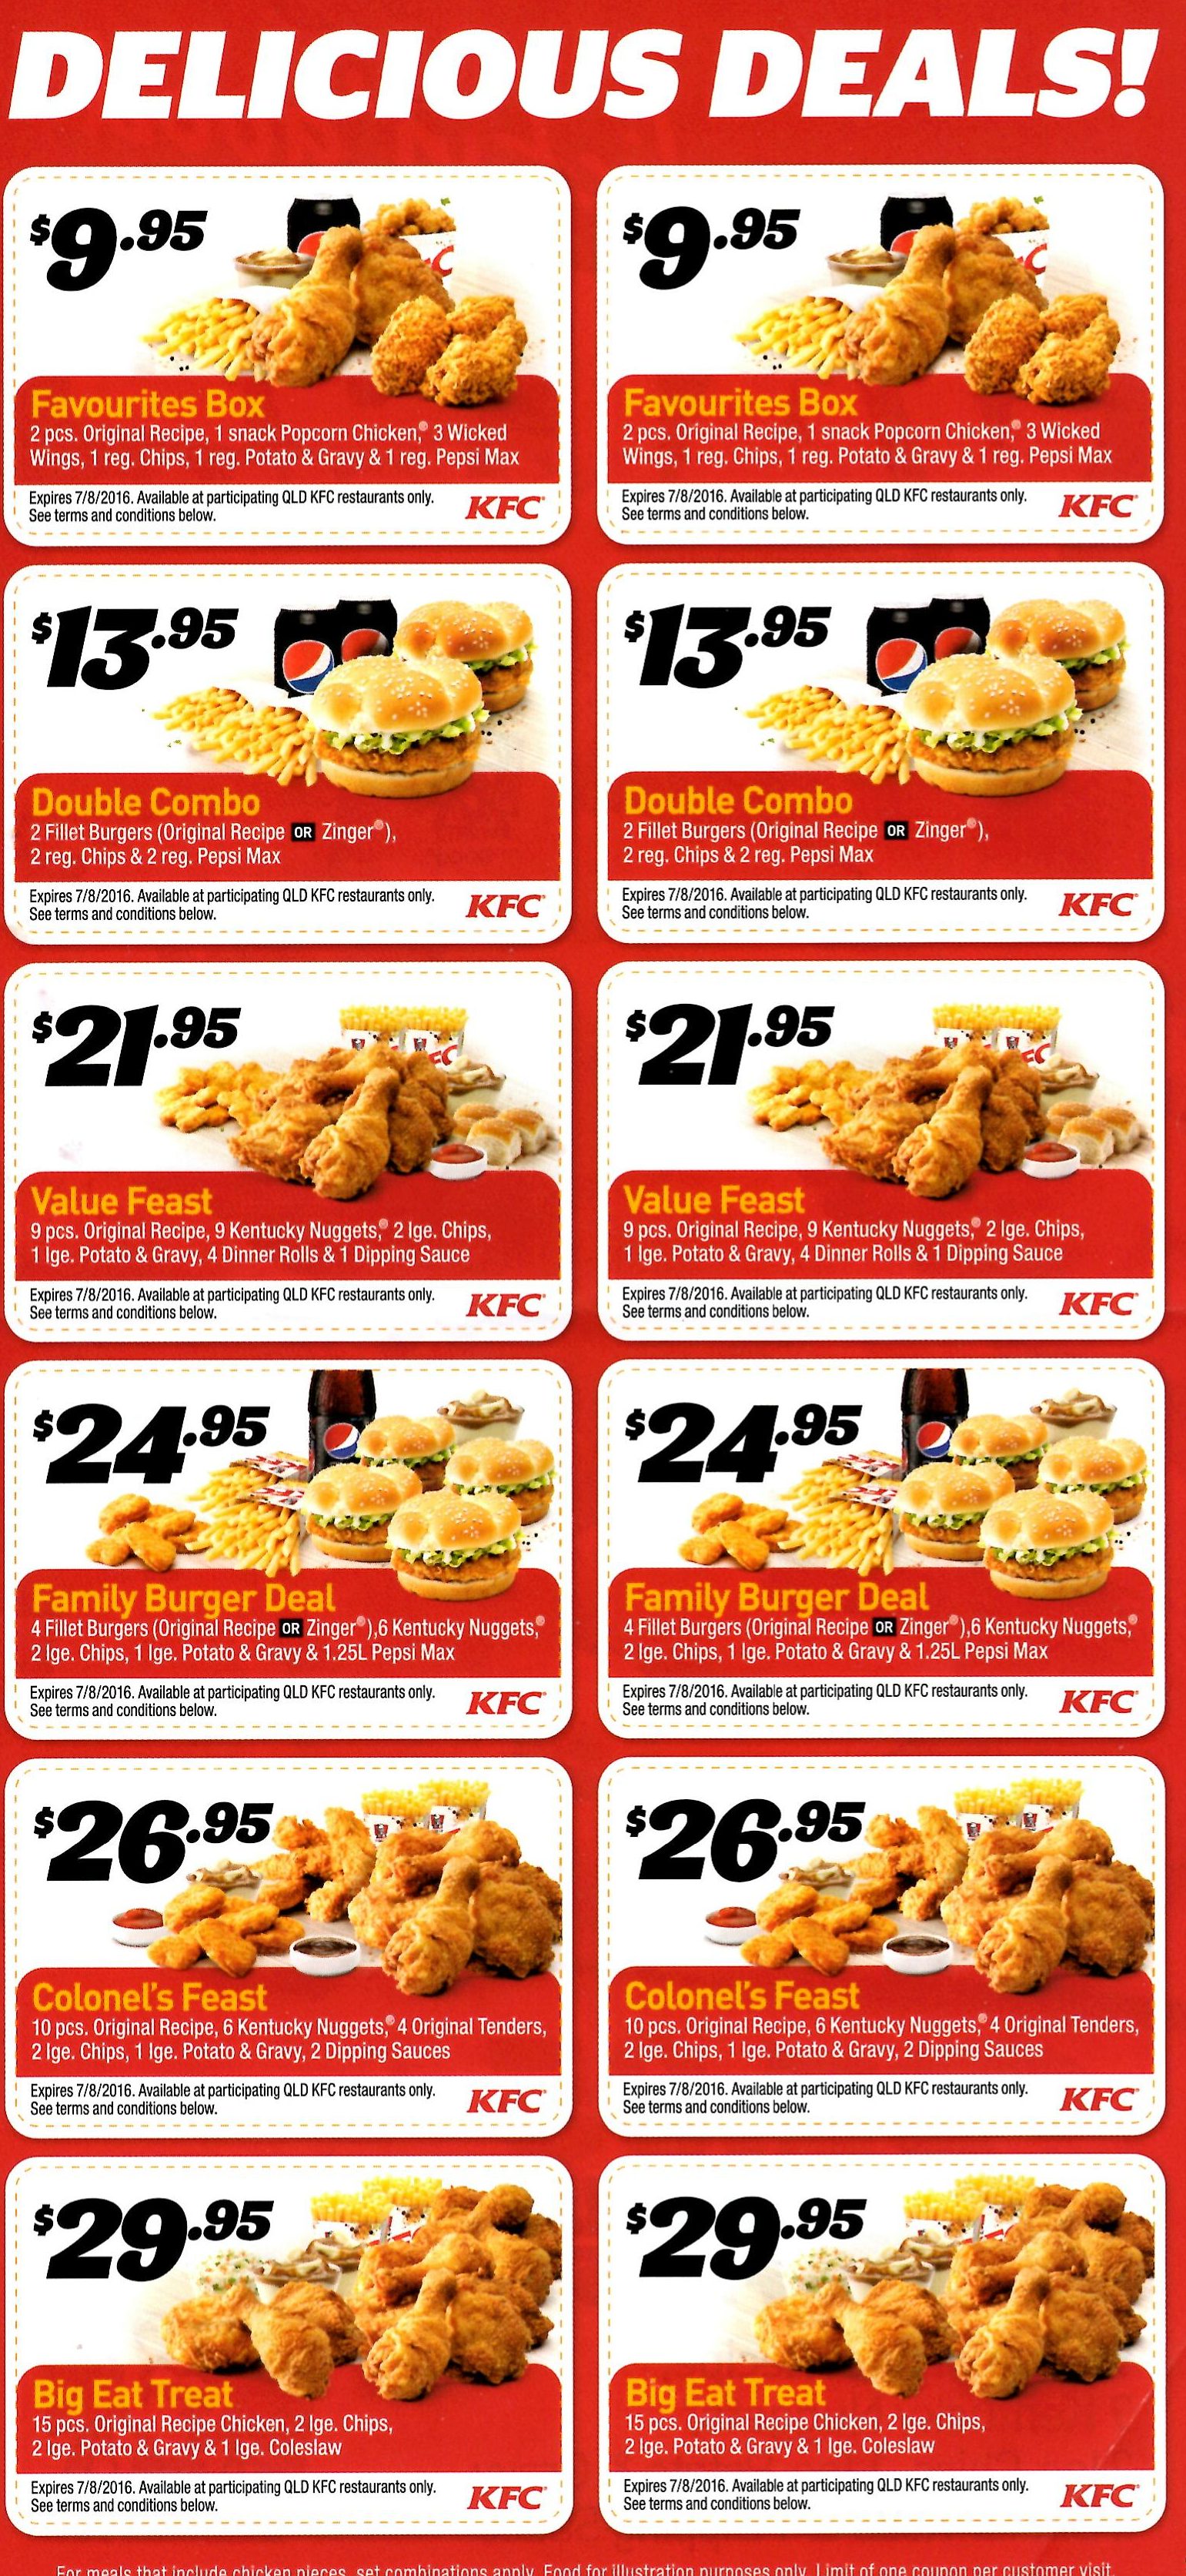 KFC Details